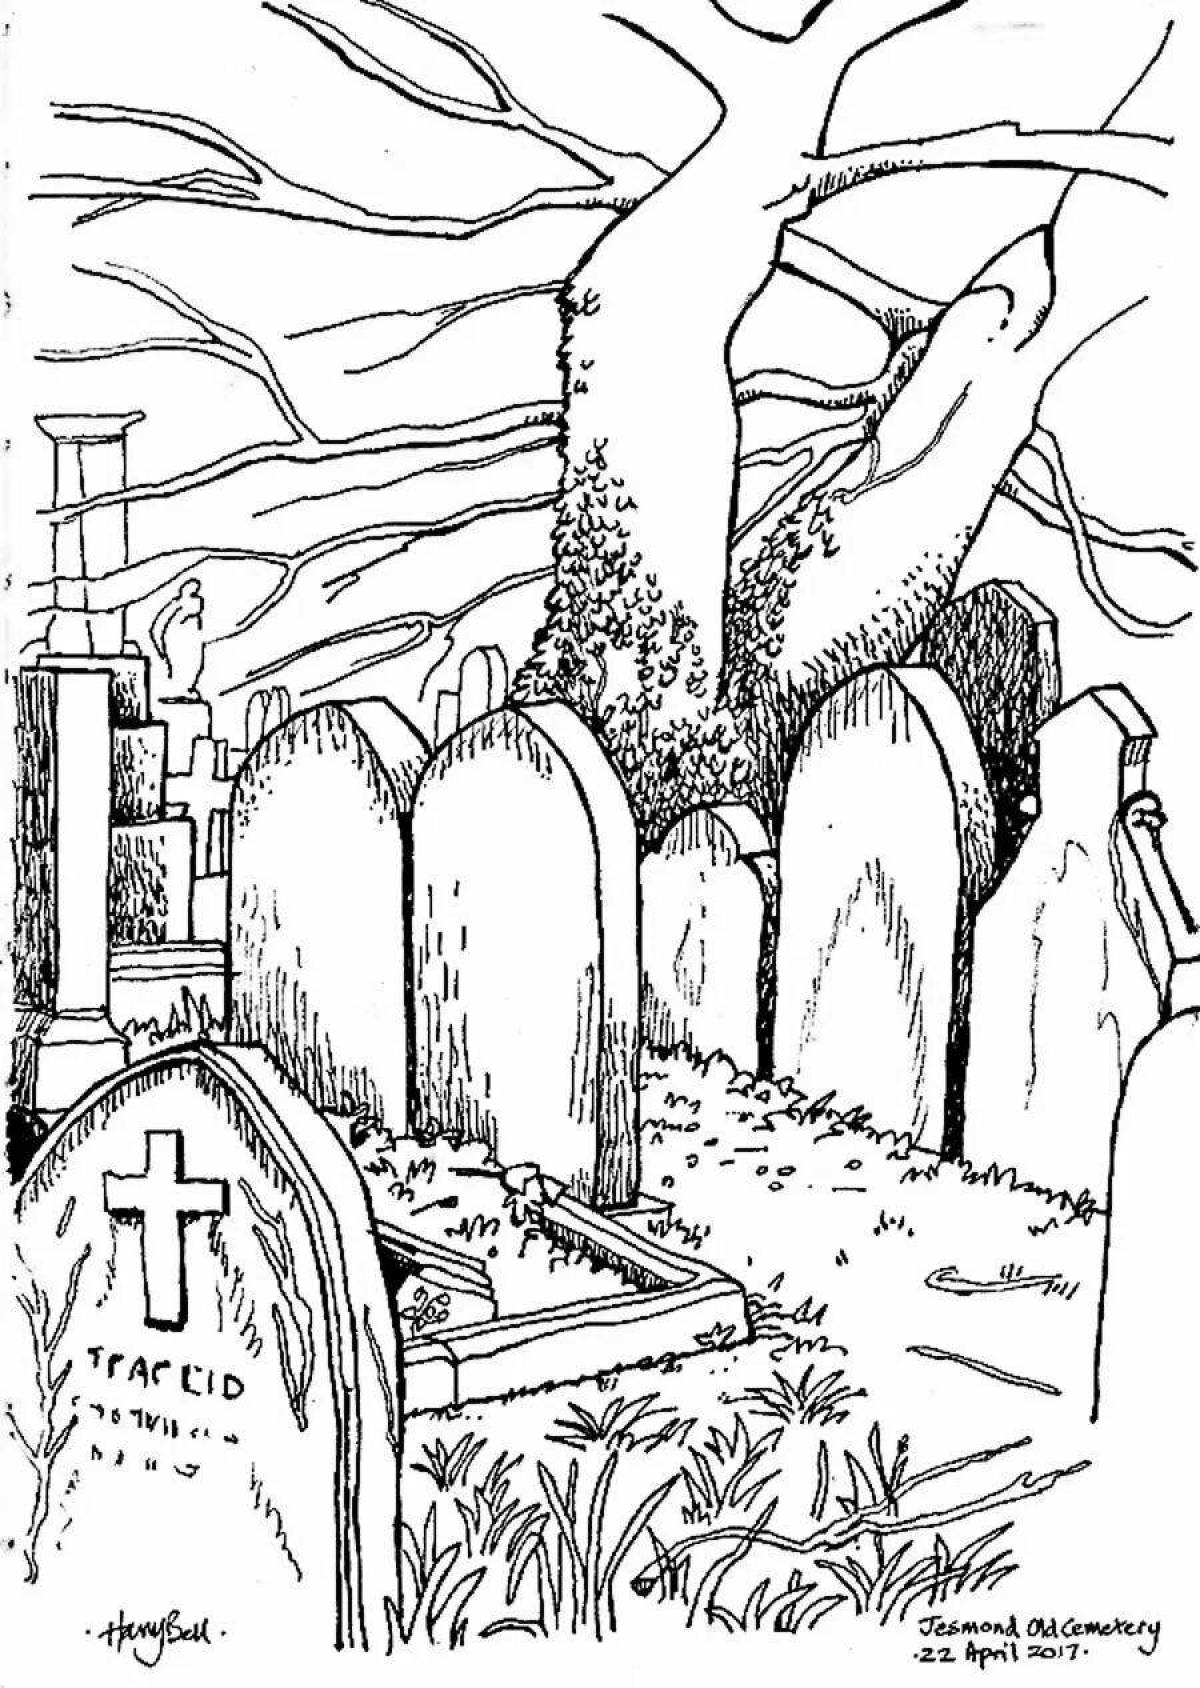 Cemetery #2